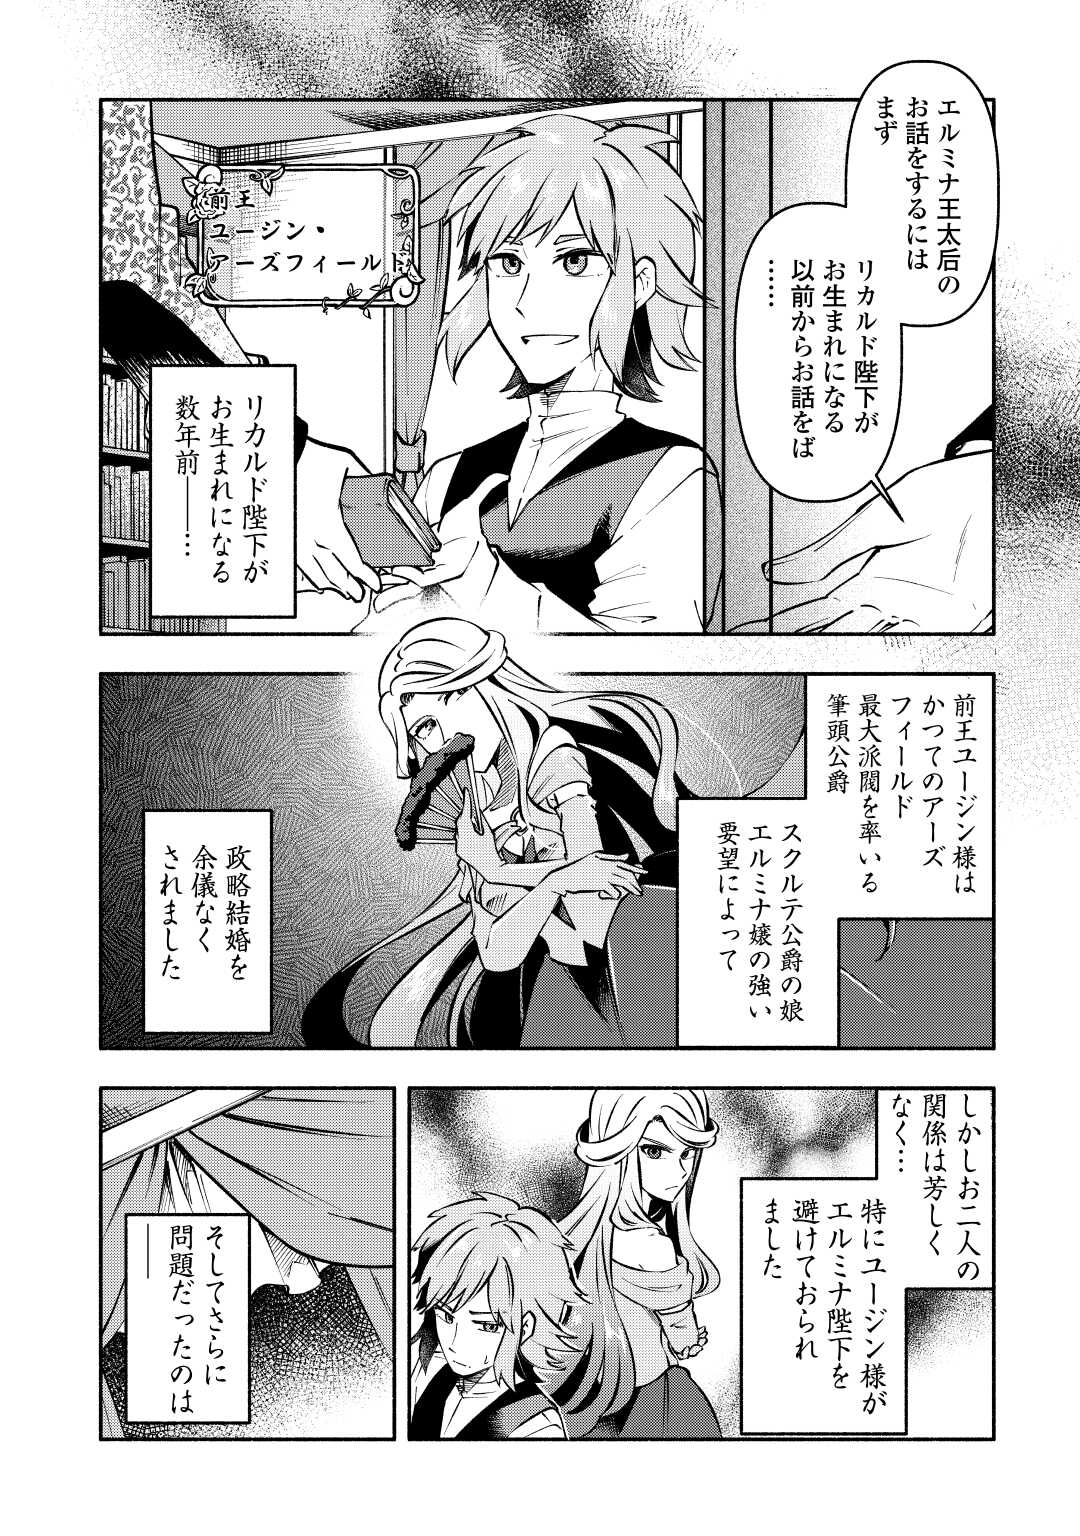 Osanago wa Saikyou no Tamer da to Kizuiteimasen! - Chapter 11 - Page 4